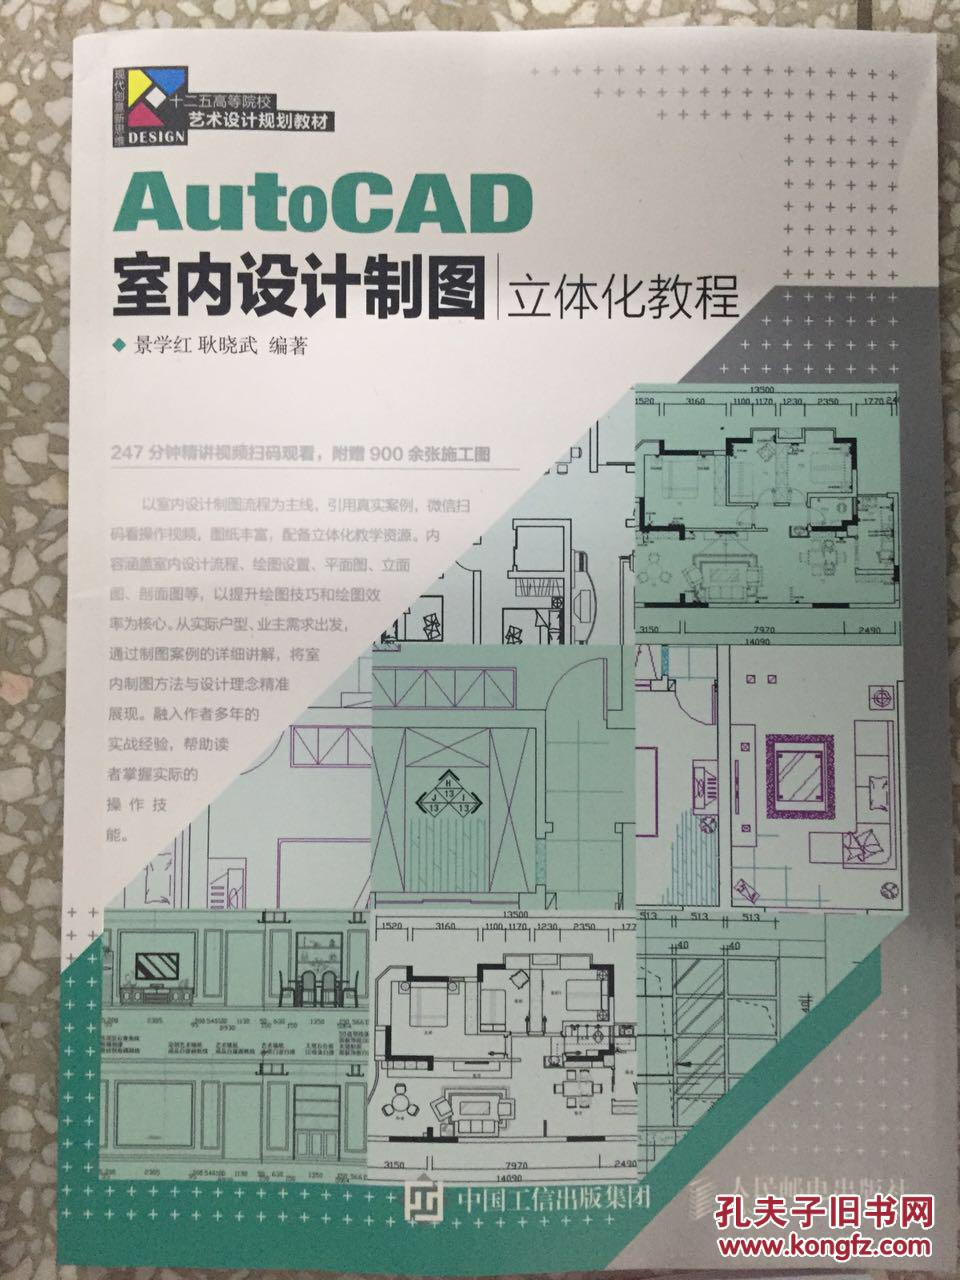 AutoCAD室内设计制图立体化教程